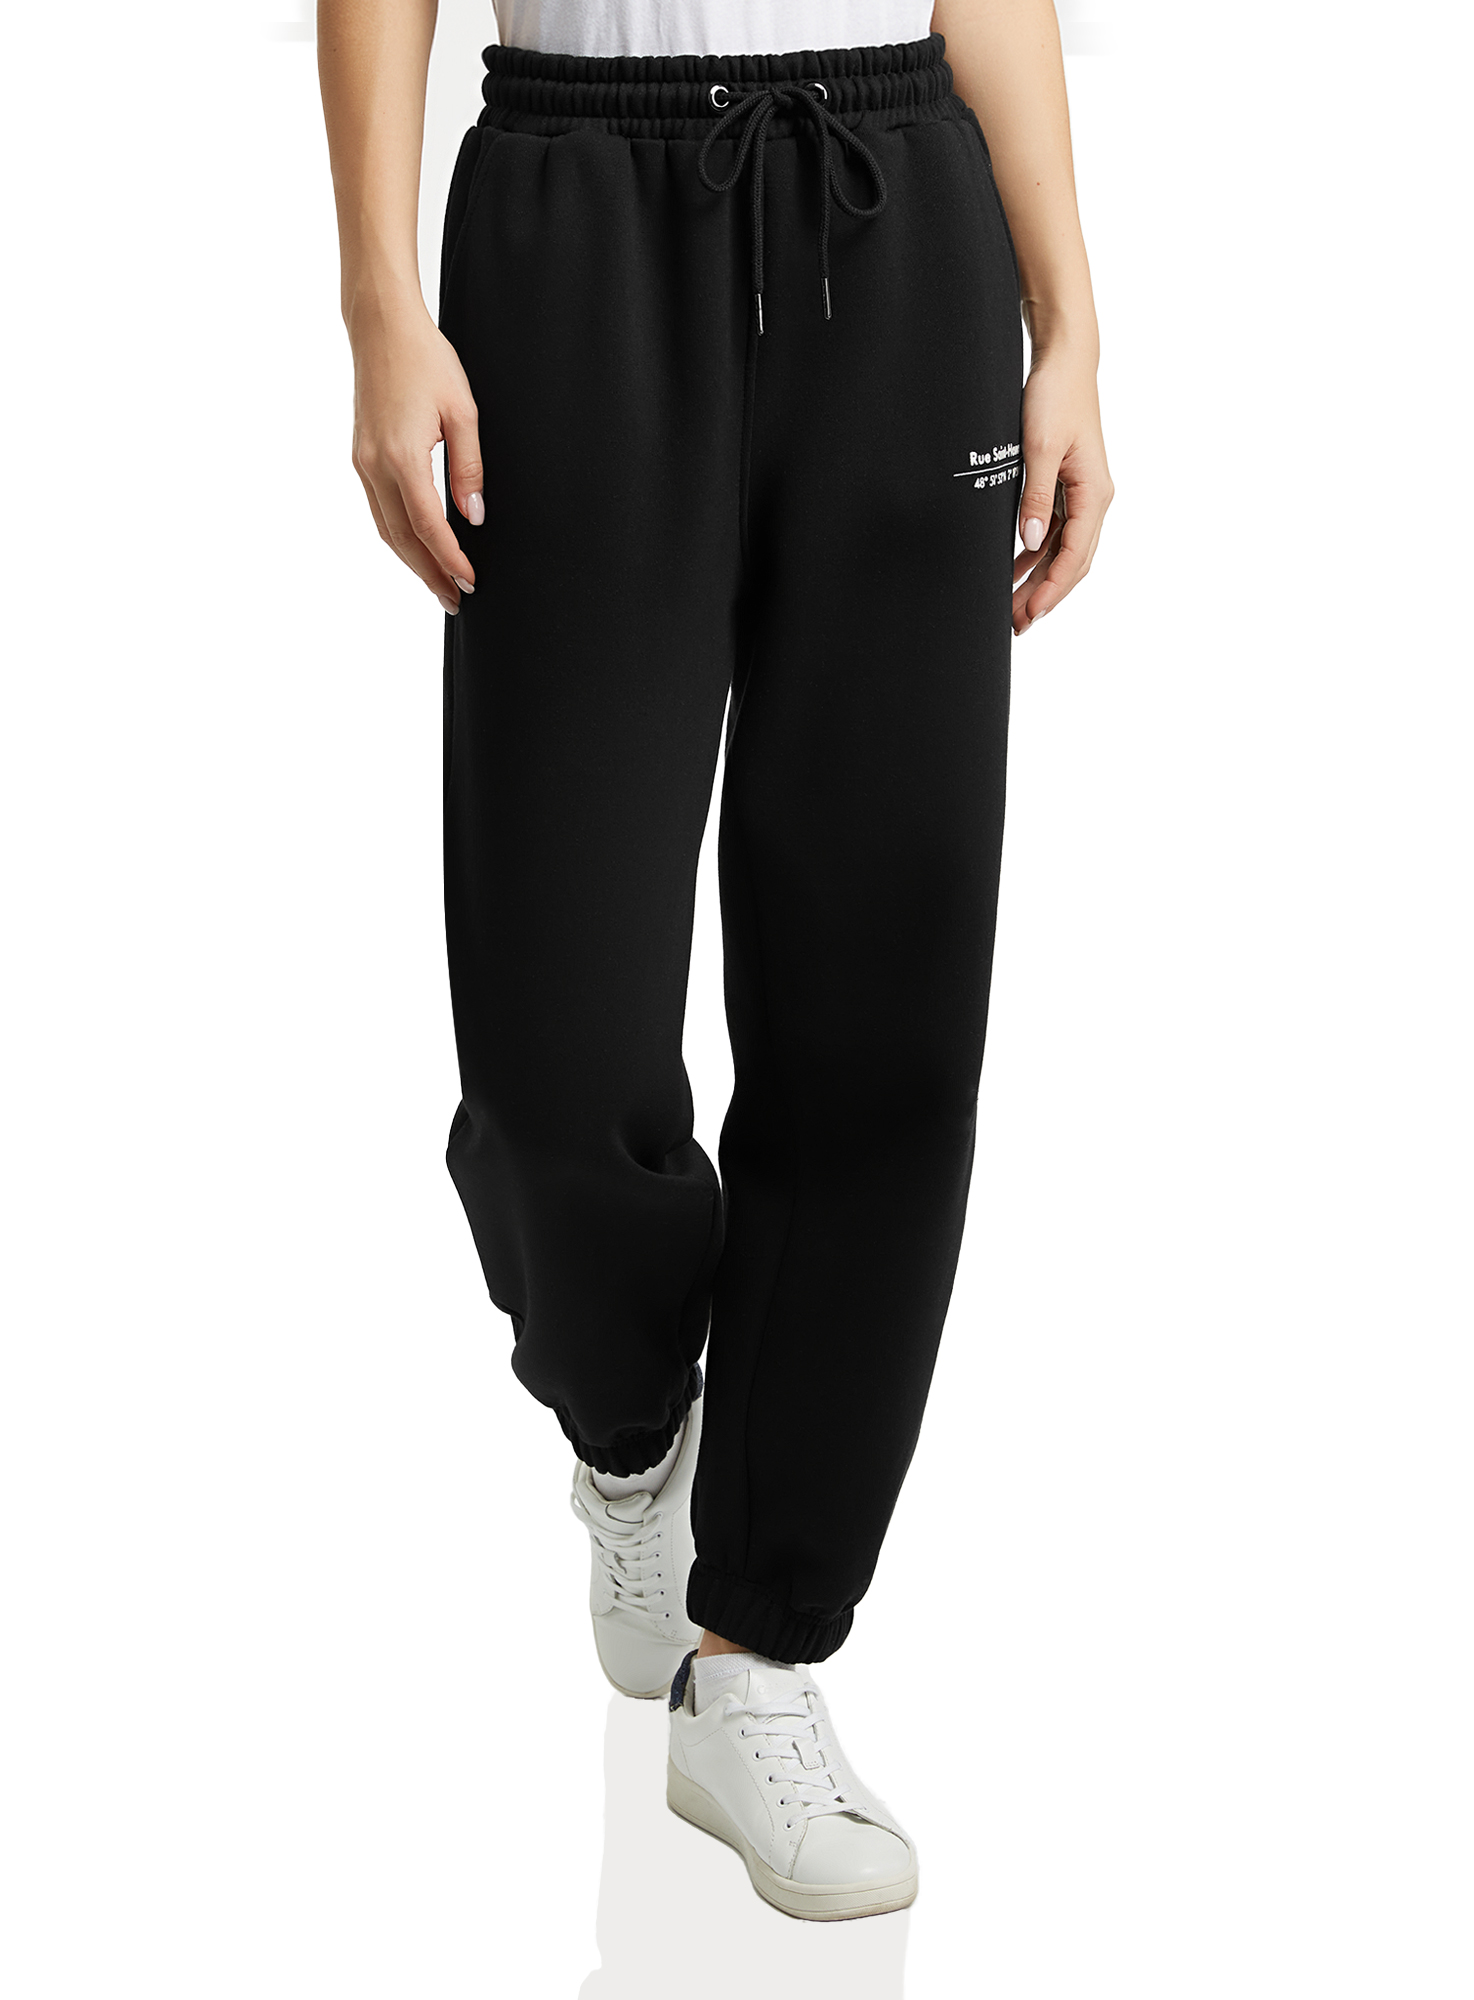 Спортивные брюки женские oodji 16701086-2 черные XS